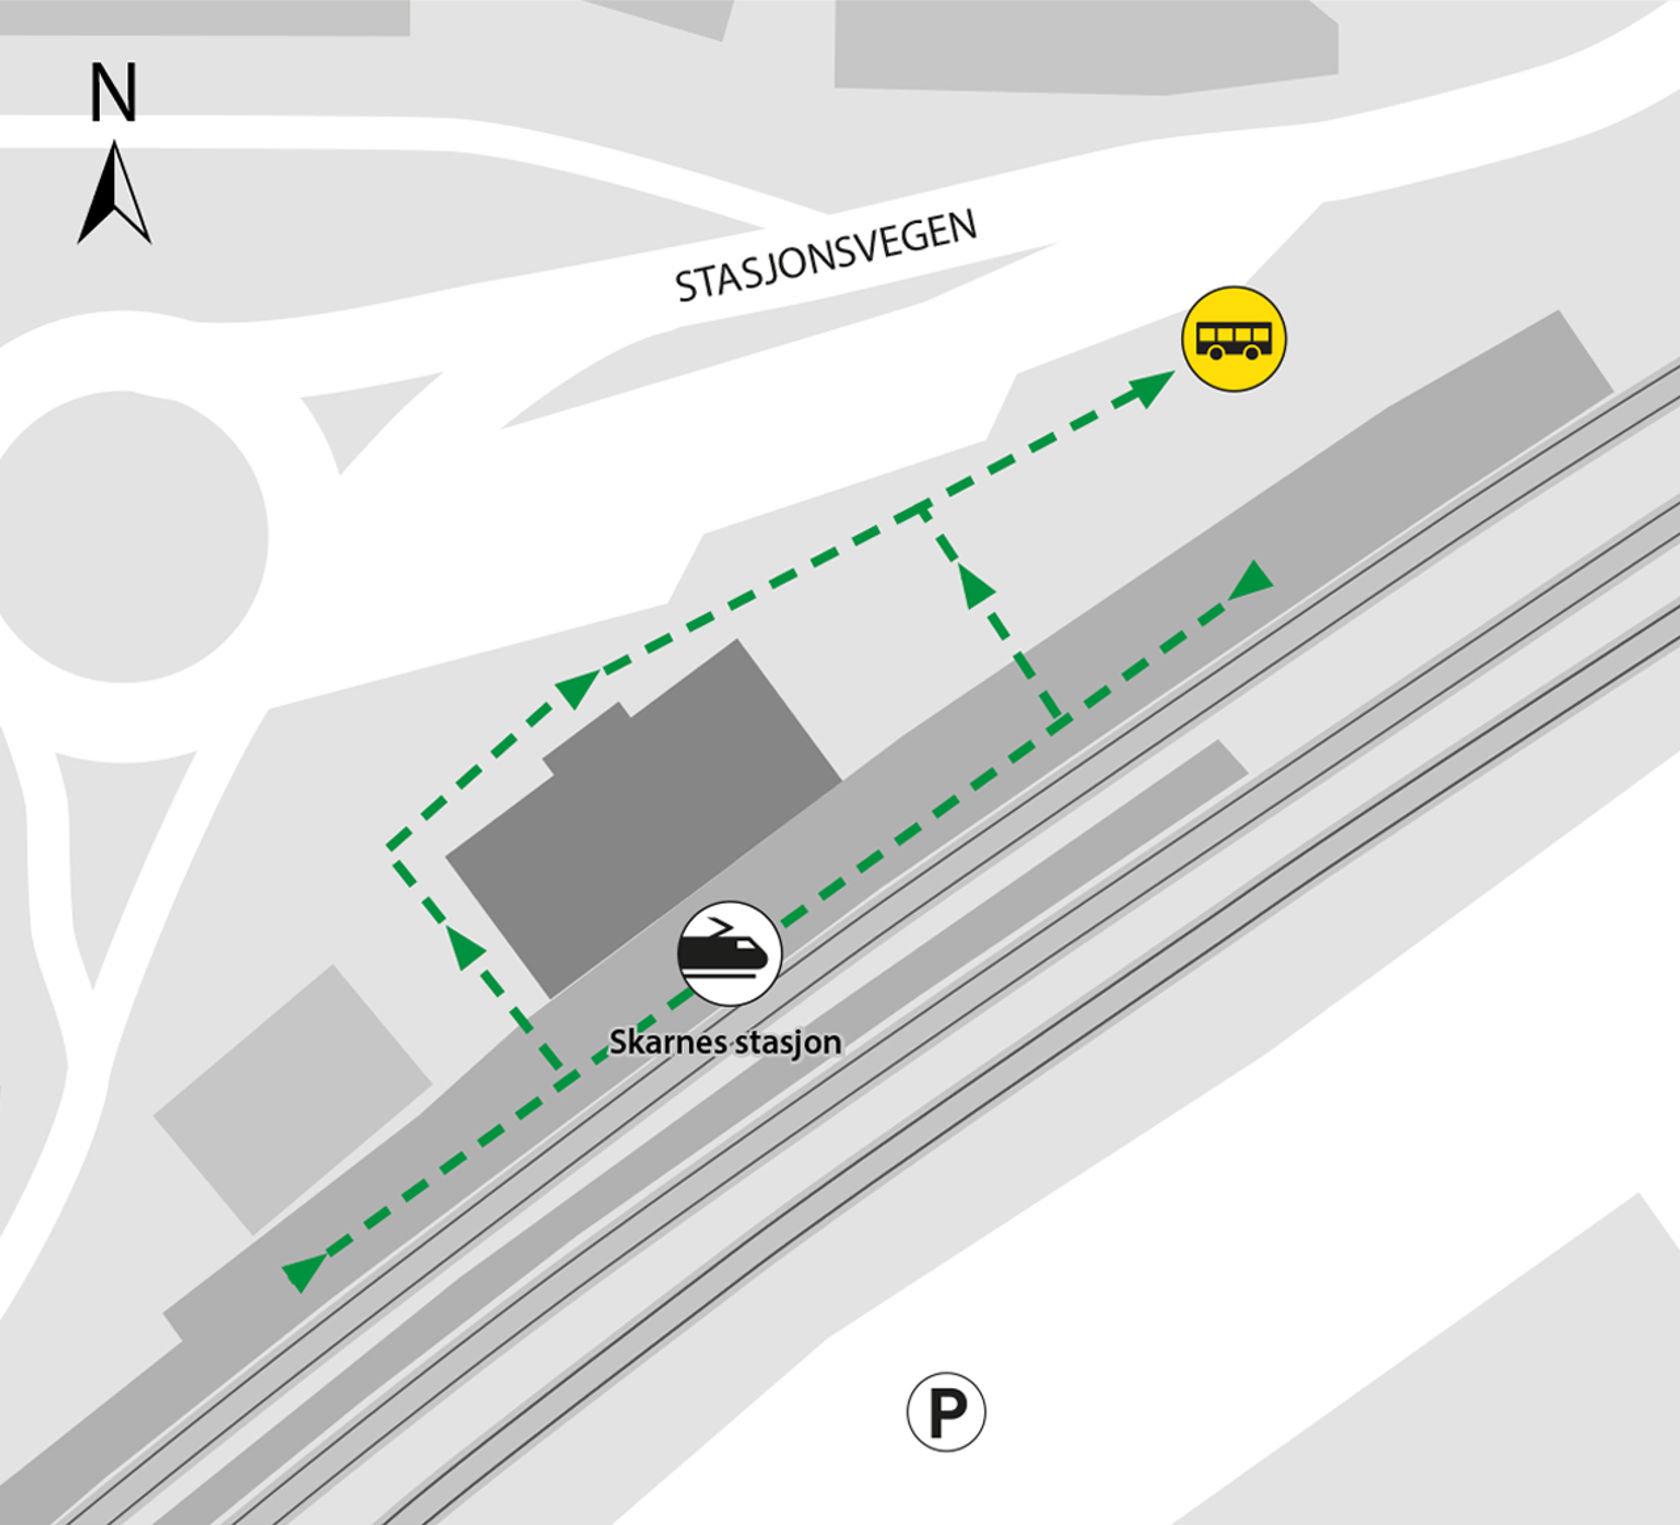 Kartet viser at bussene kjører fra bussholdeplassen Skarnes stasjon